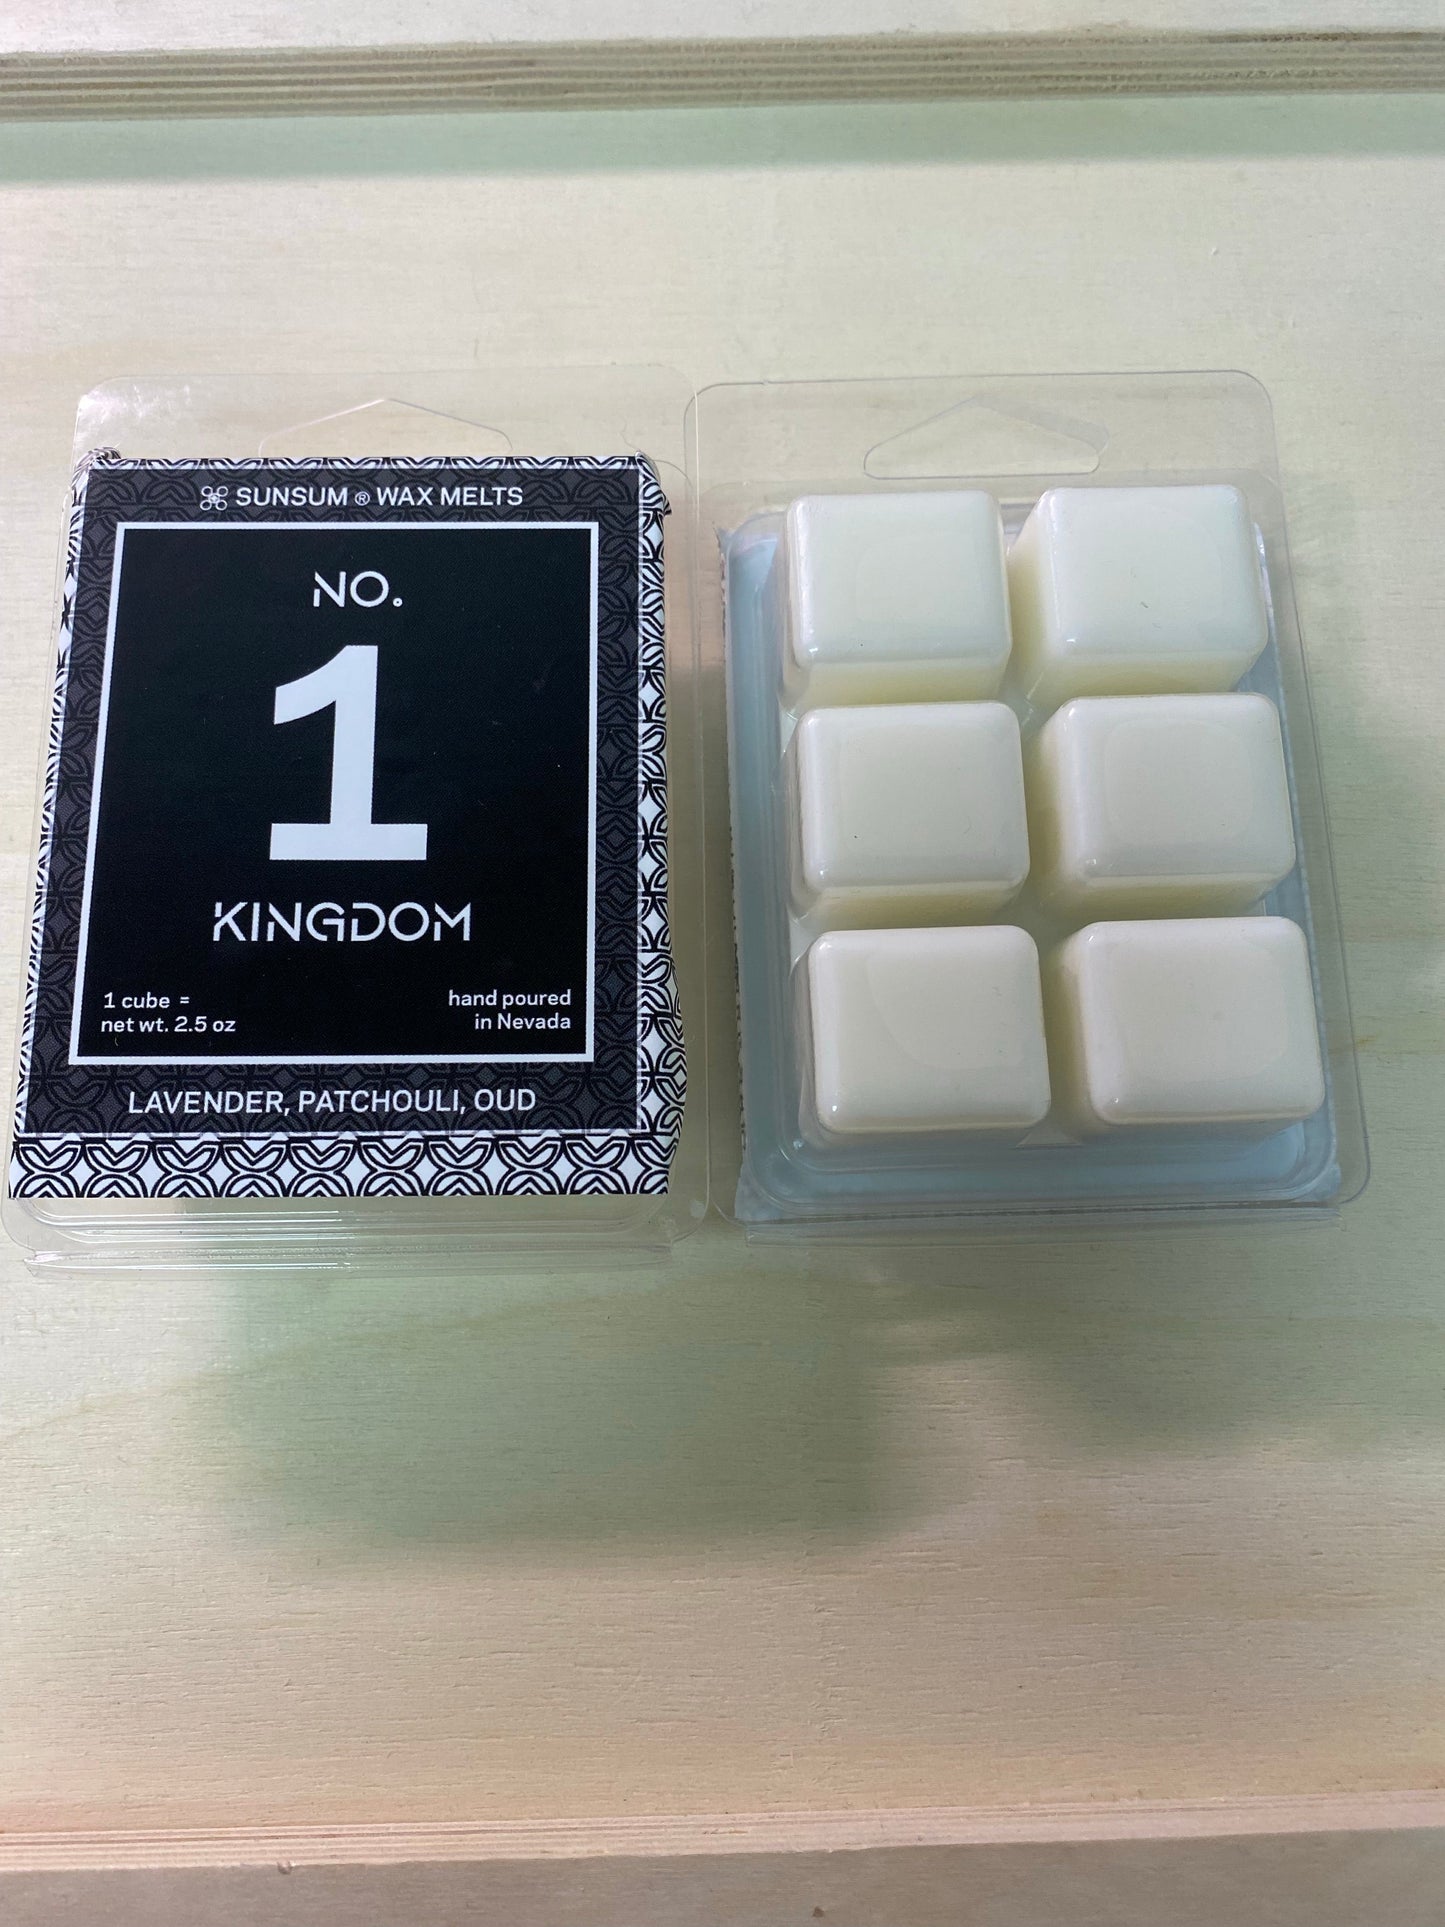 No. 1 - Kingdom Wax Melts